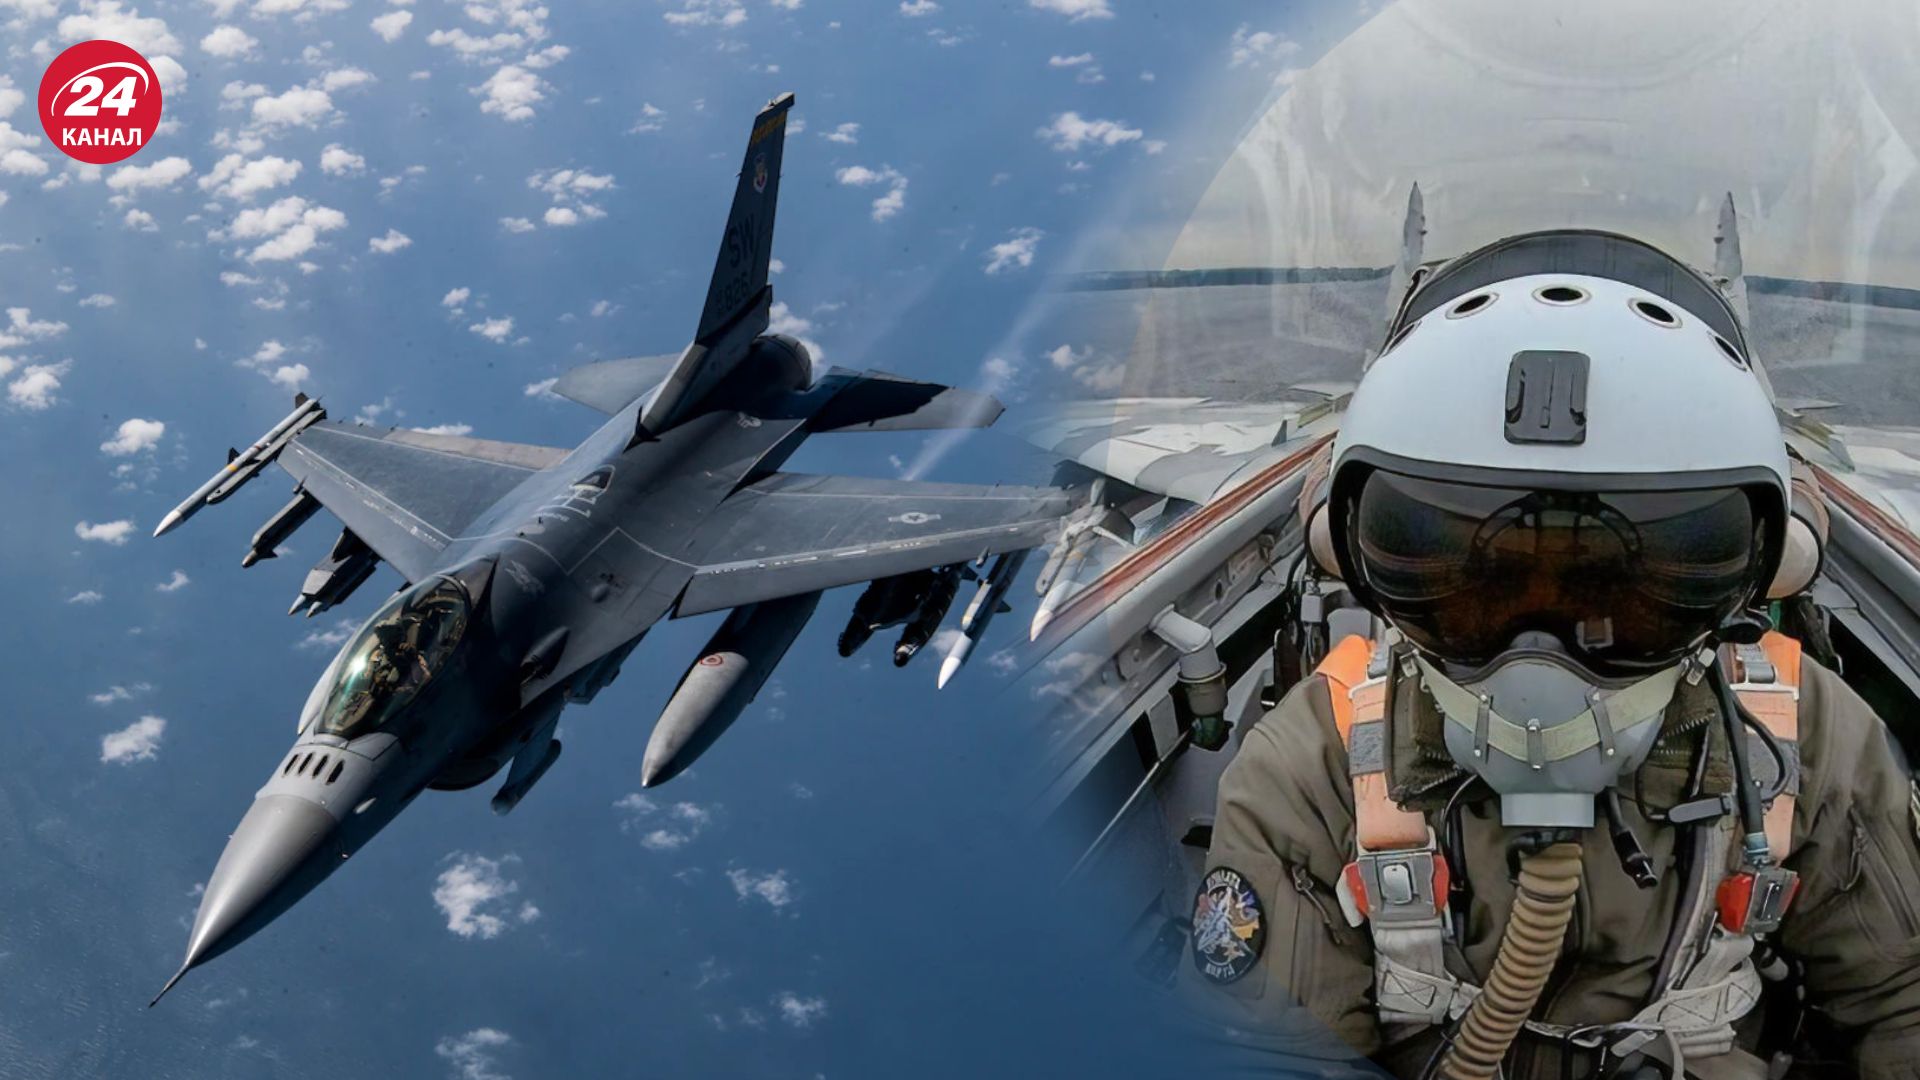 Дания получит секретные документы для обучения на F-16